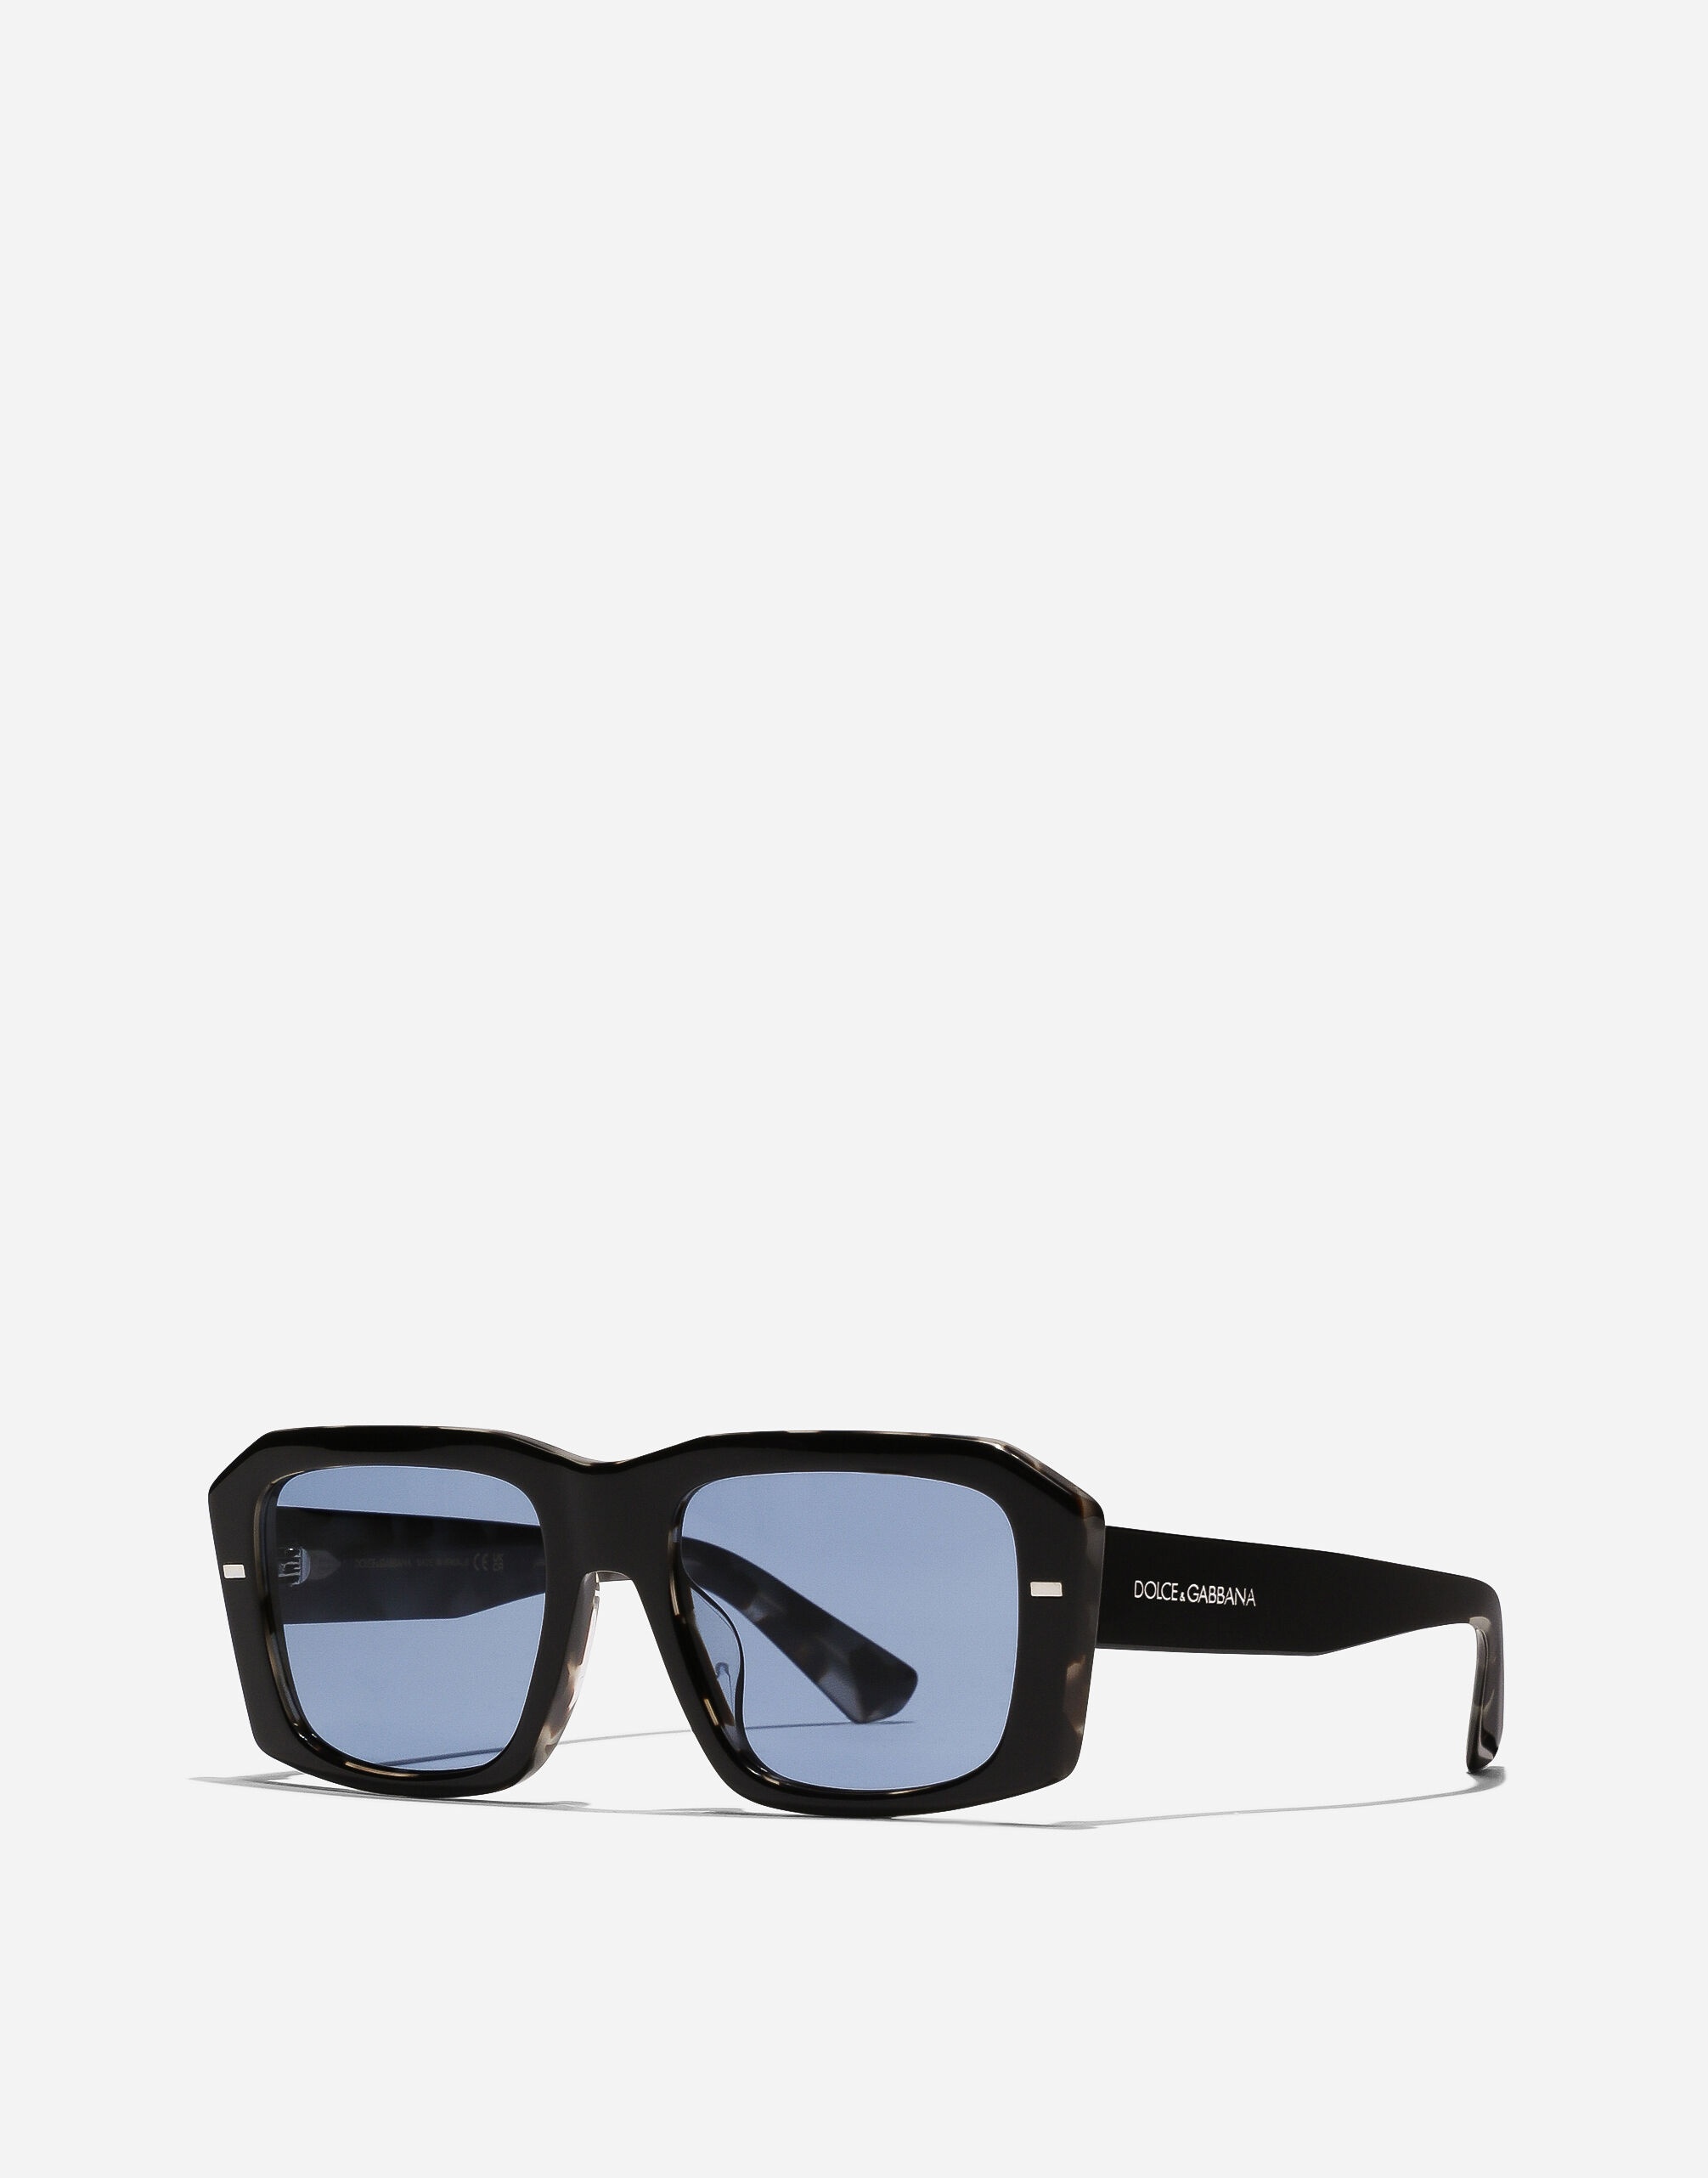 Lusso Sartoriale Sunglasses - 6